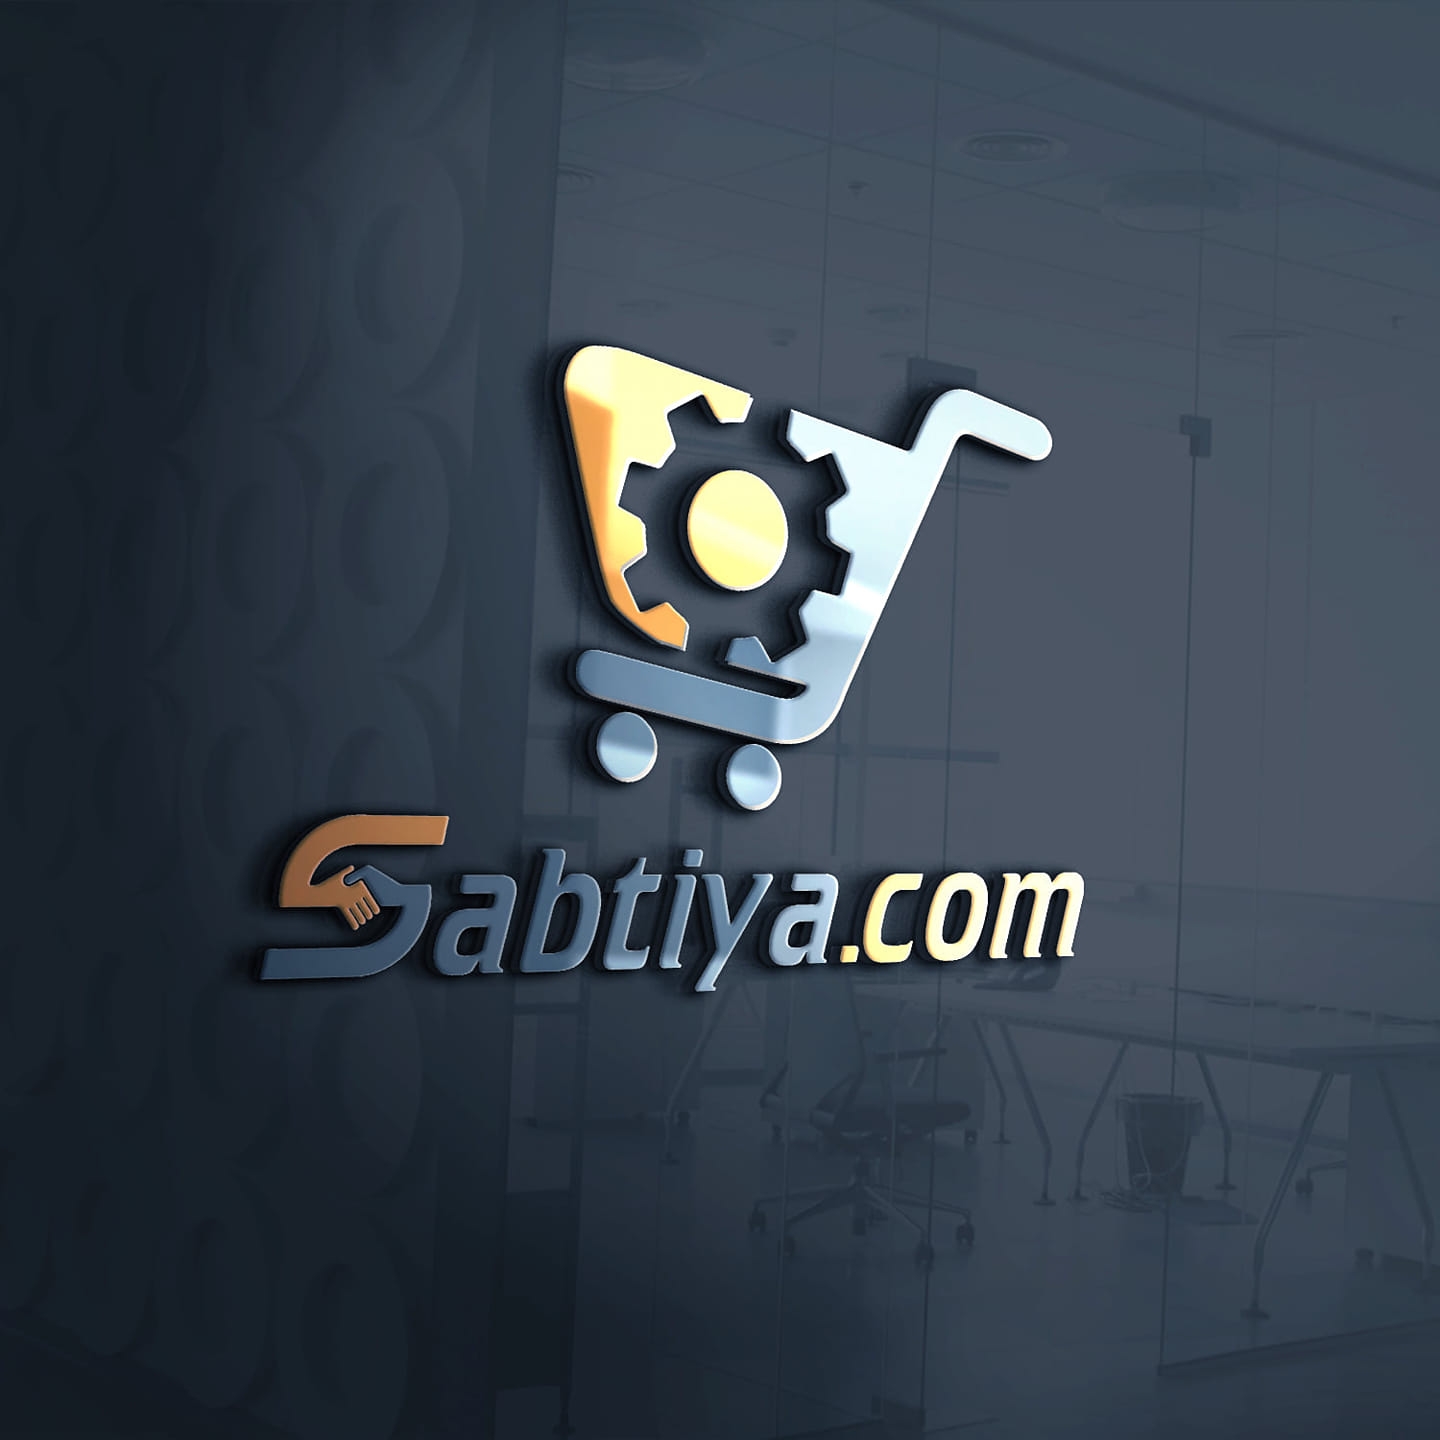 Sabtiya.com